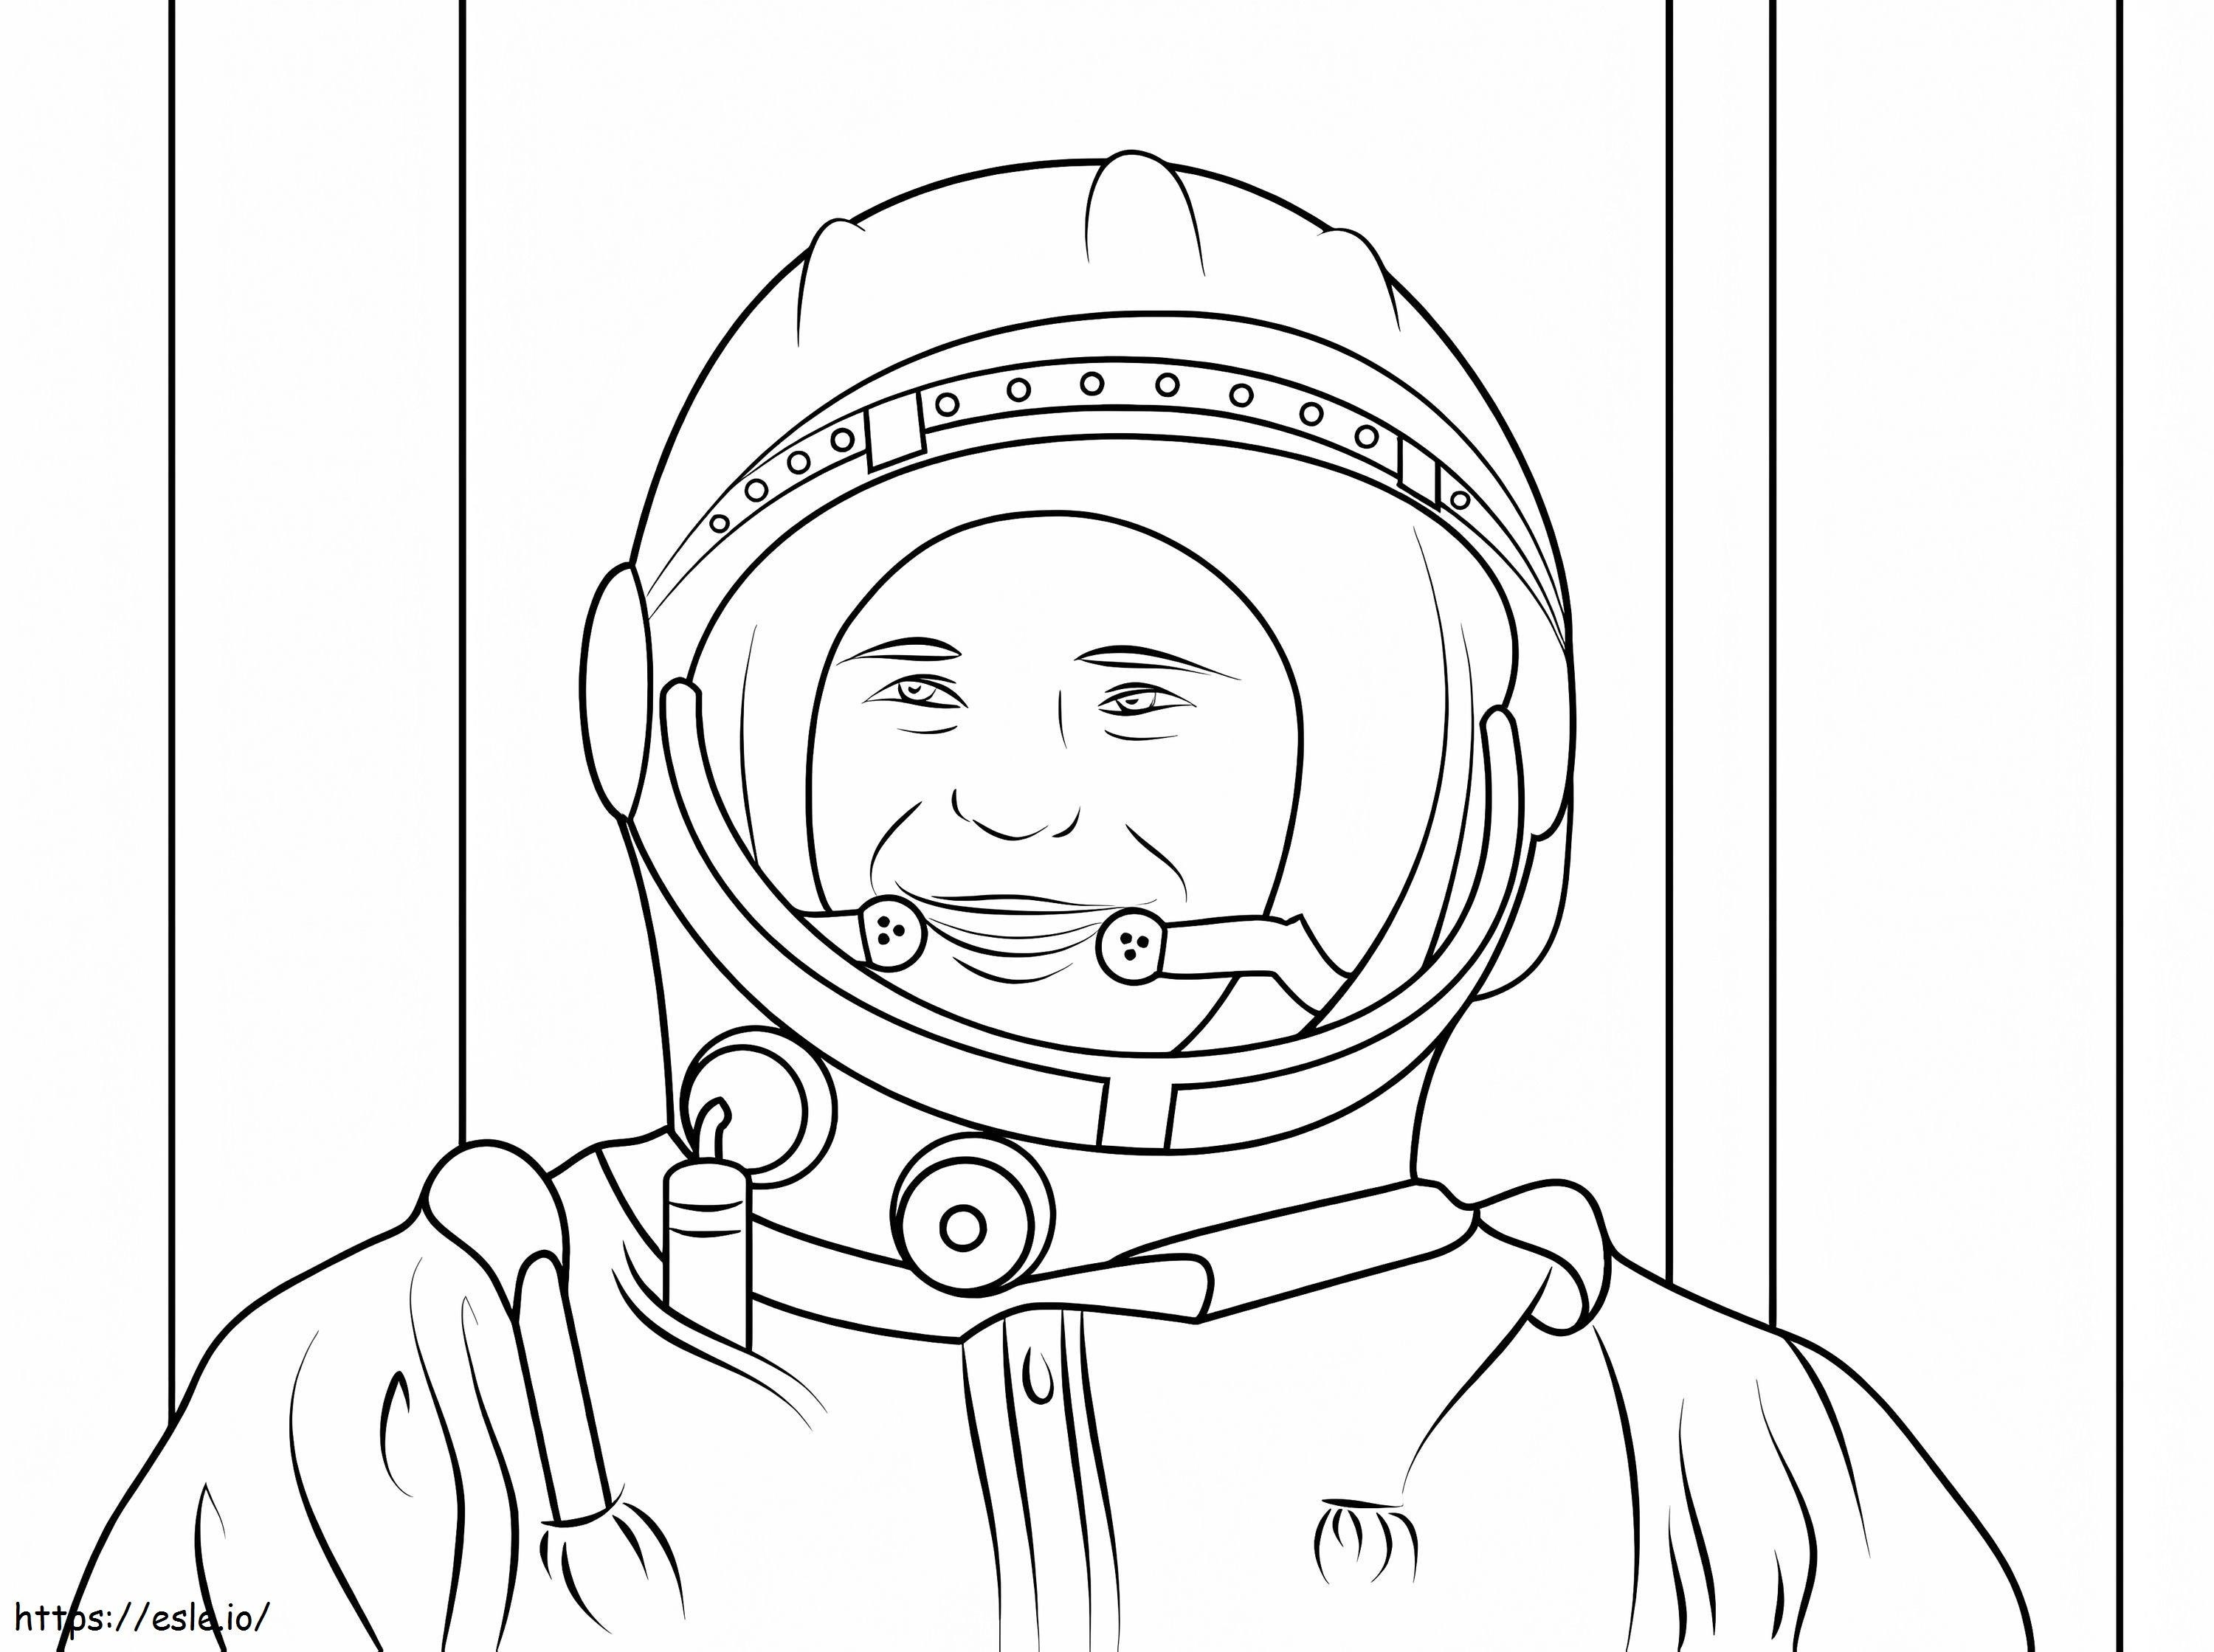 Happy Yuri Gagarin coloring page